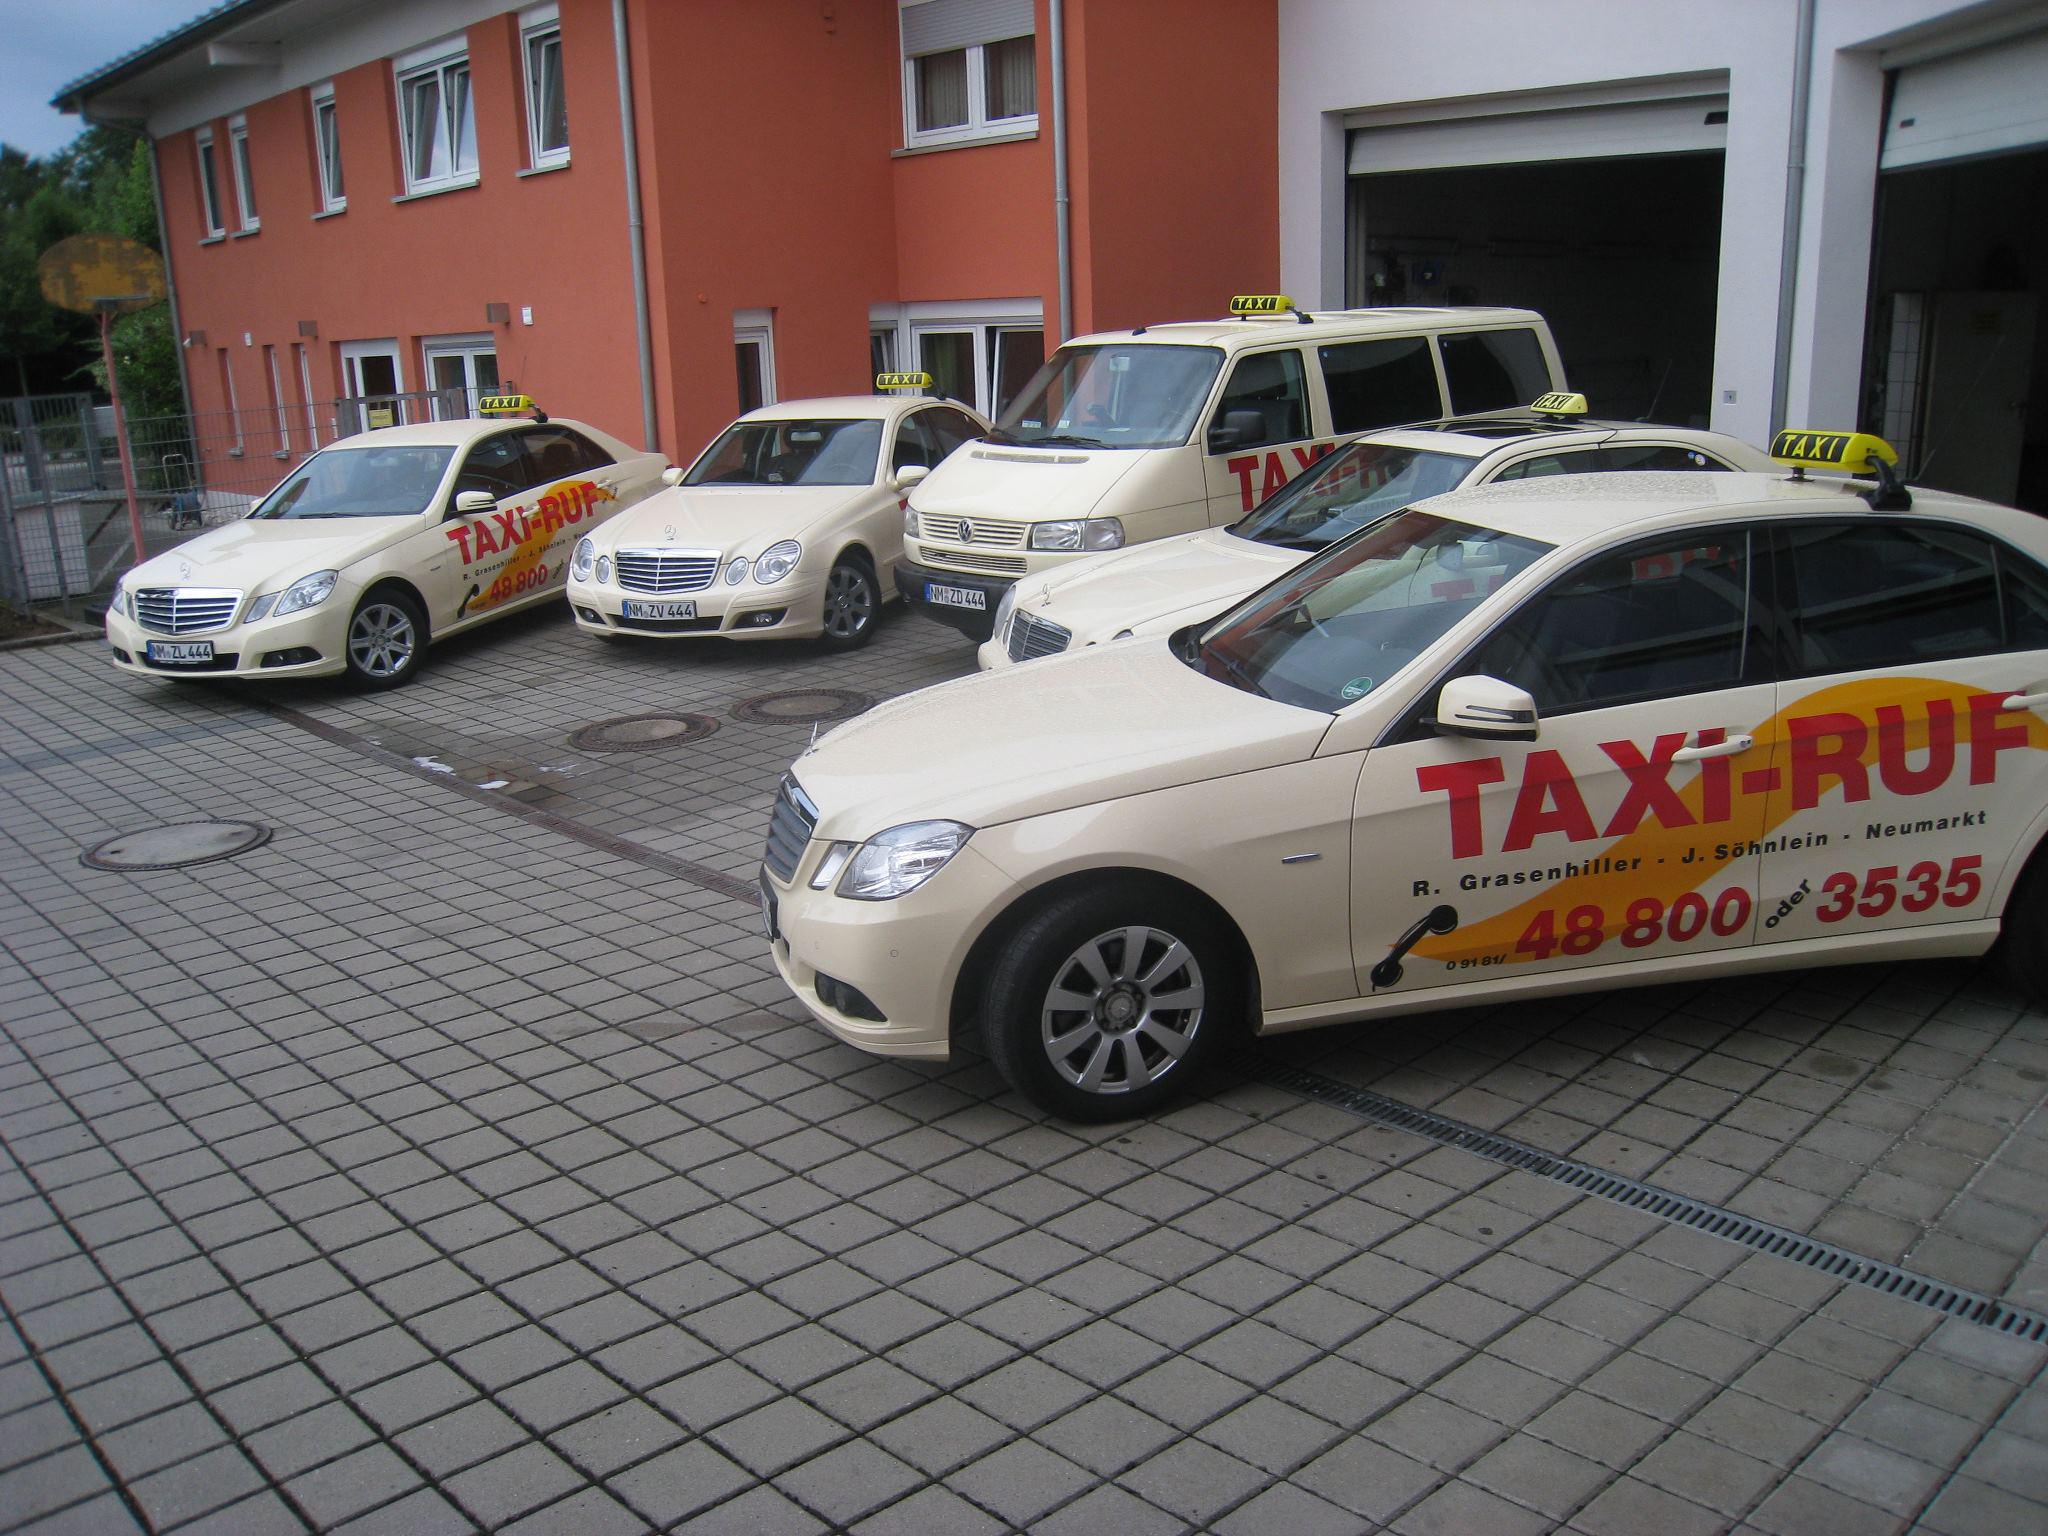 Bilder Taxi-Zentrale Grasenhiller GbR